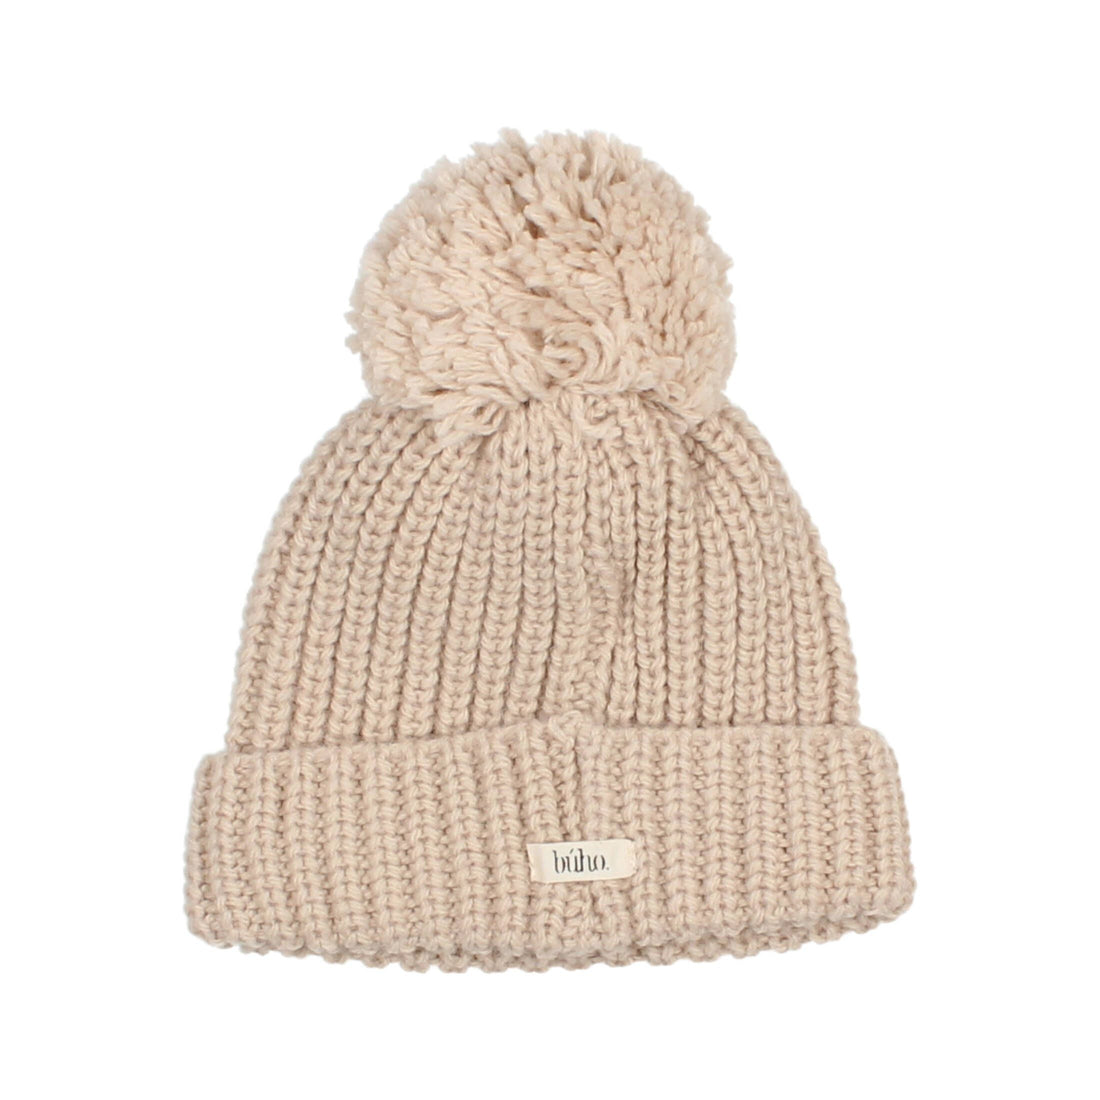 Buho - kids - pompom soft knit hat - natural